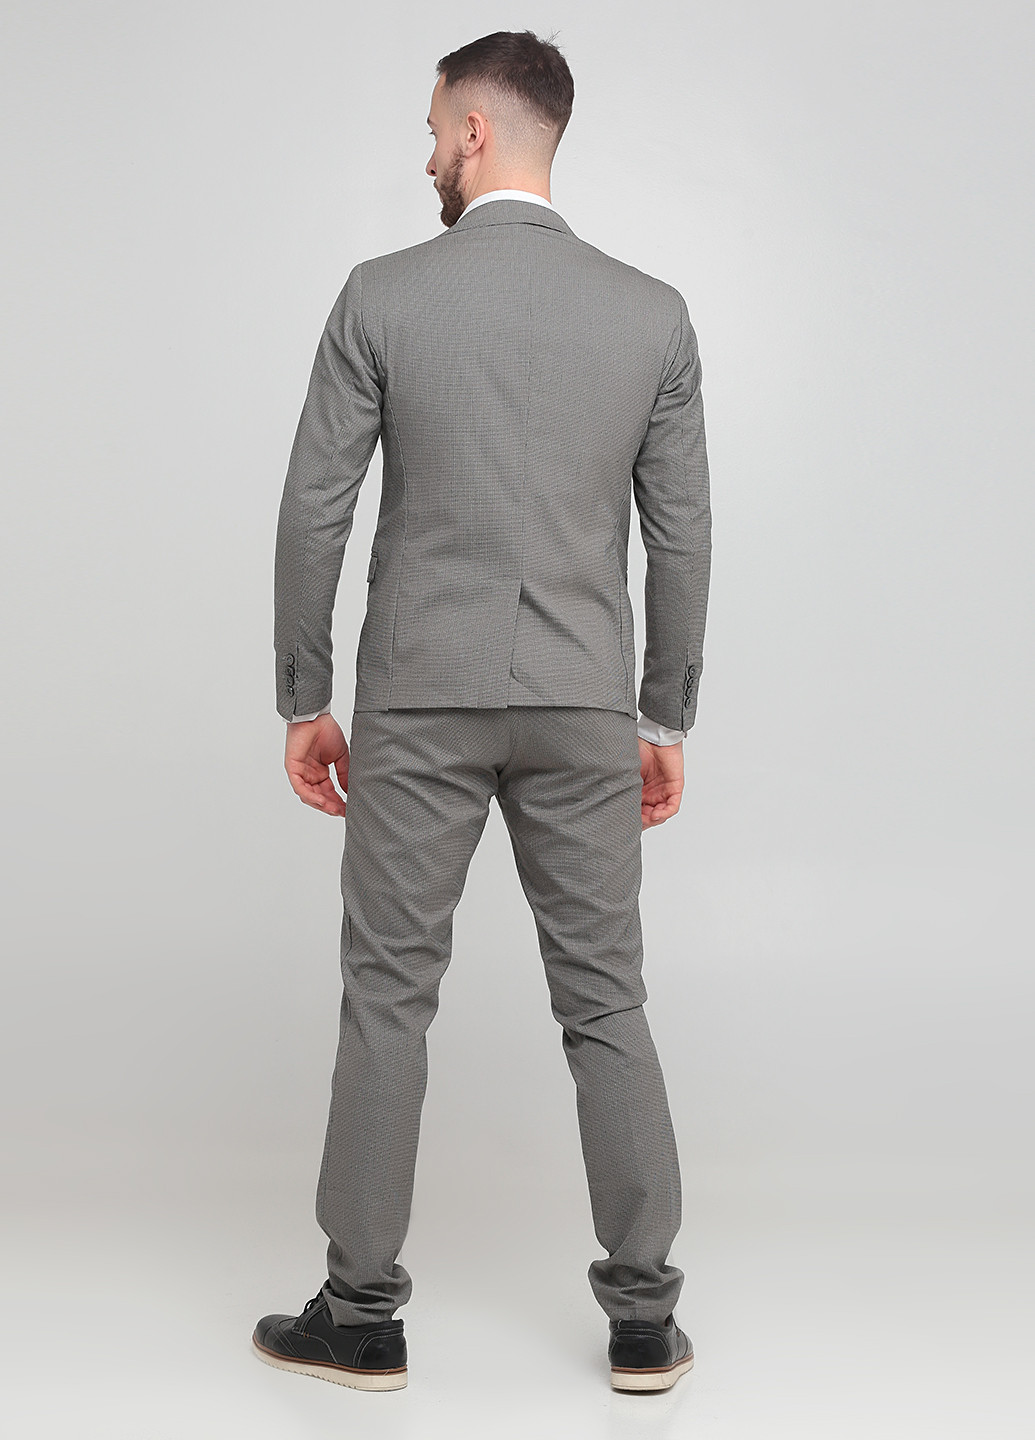 Серый демисезонный костюм (пиджак, брюки) брючный Primo Emporio